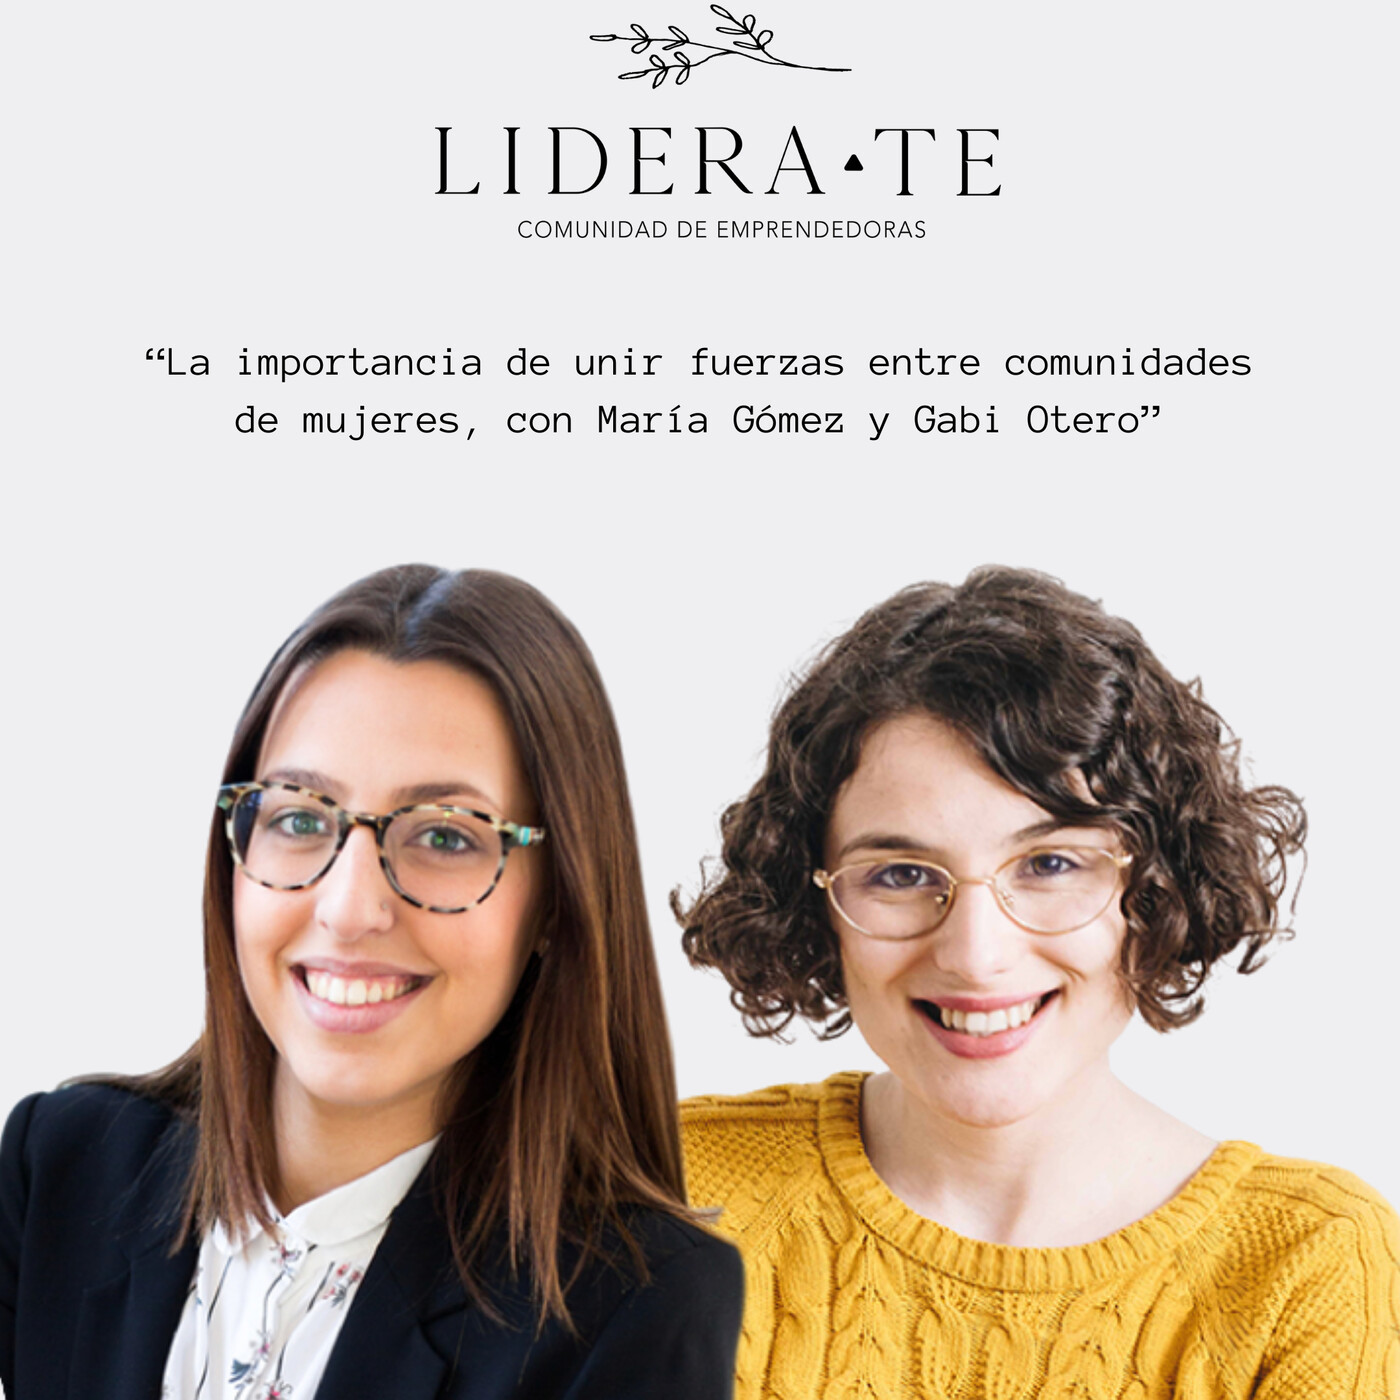 La importancia de unir fuerzas entre comunidades de mujeres, con María Gómez y Gabi Otero